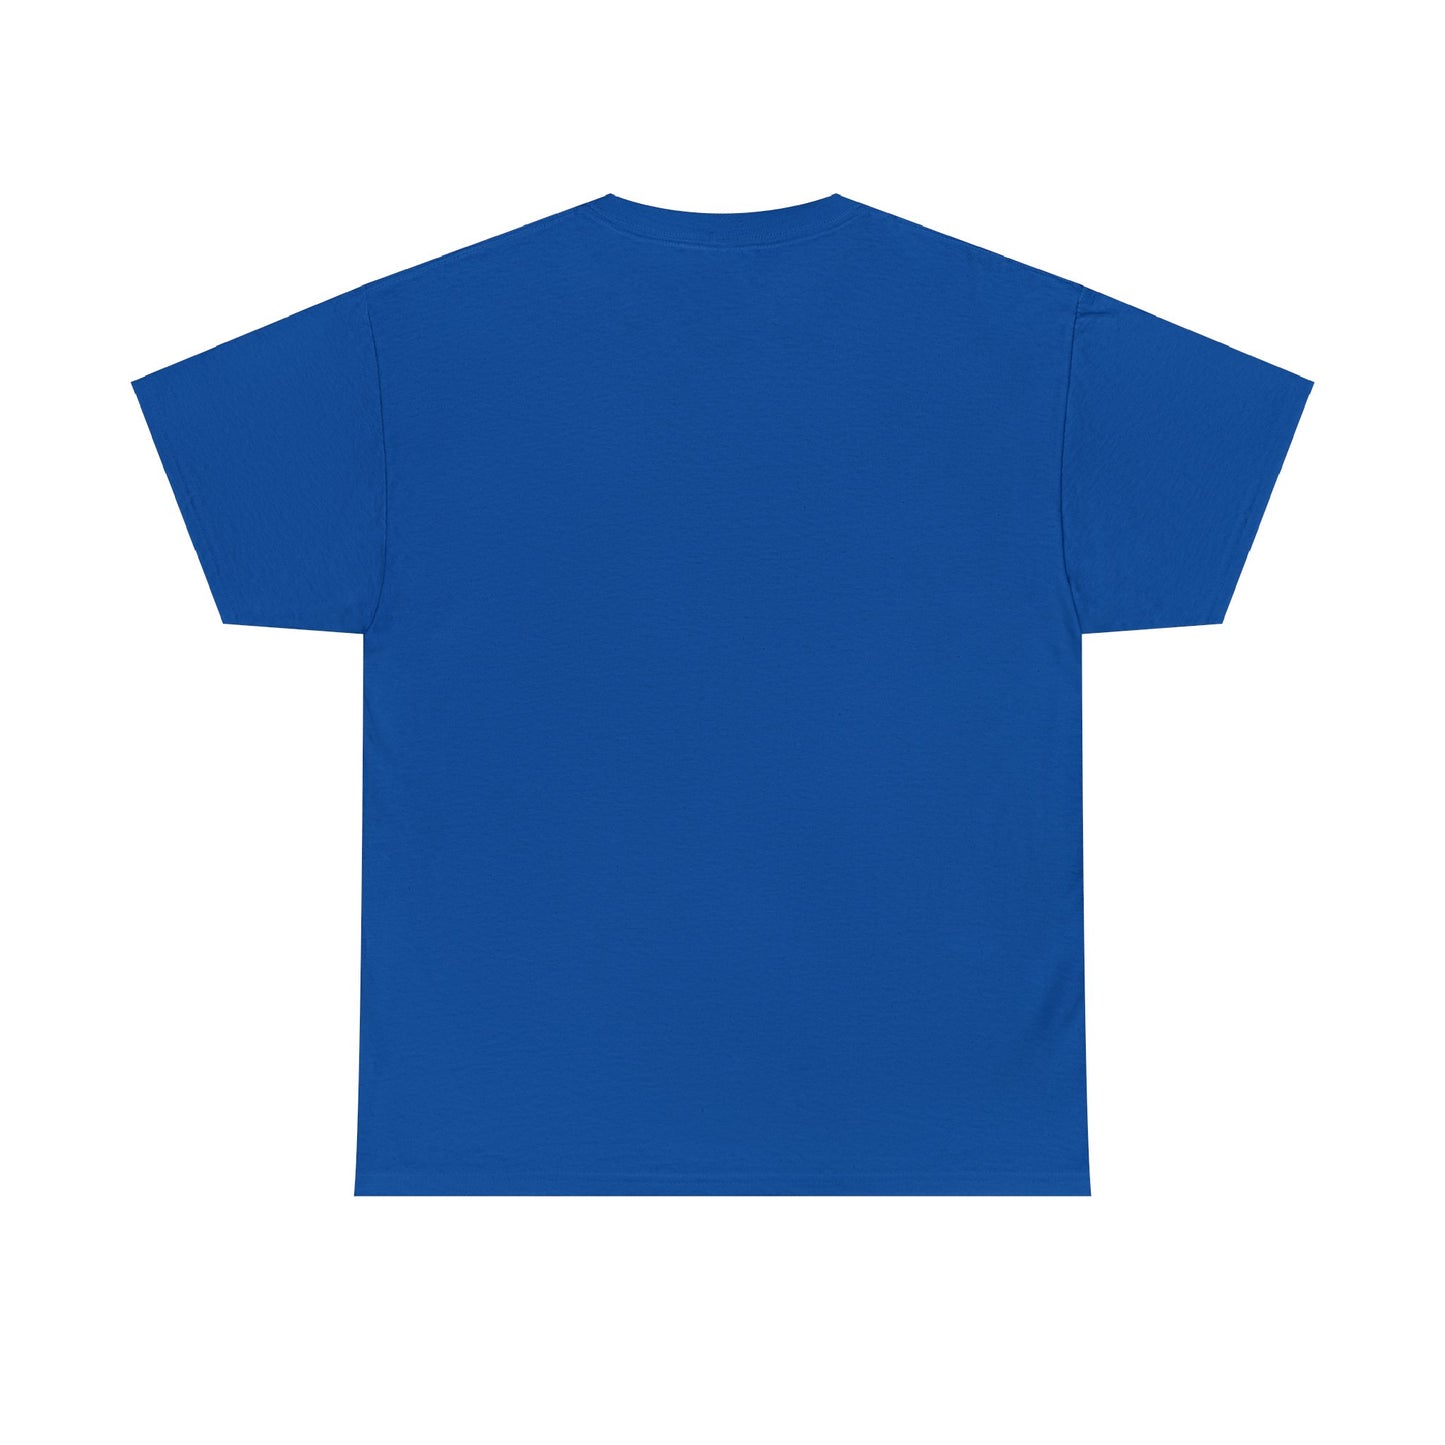 Tee-Shirt Bleu royal unisexe en soutien aux agriculteurs